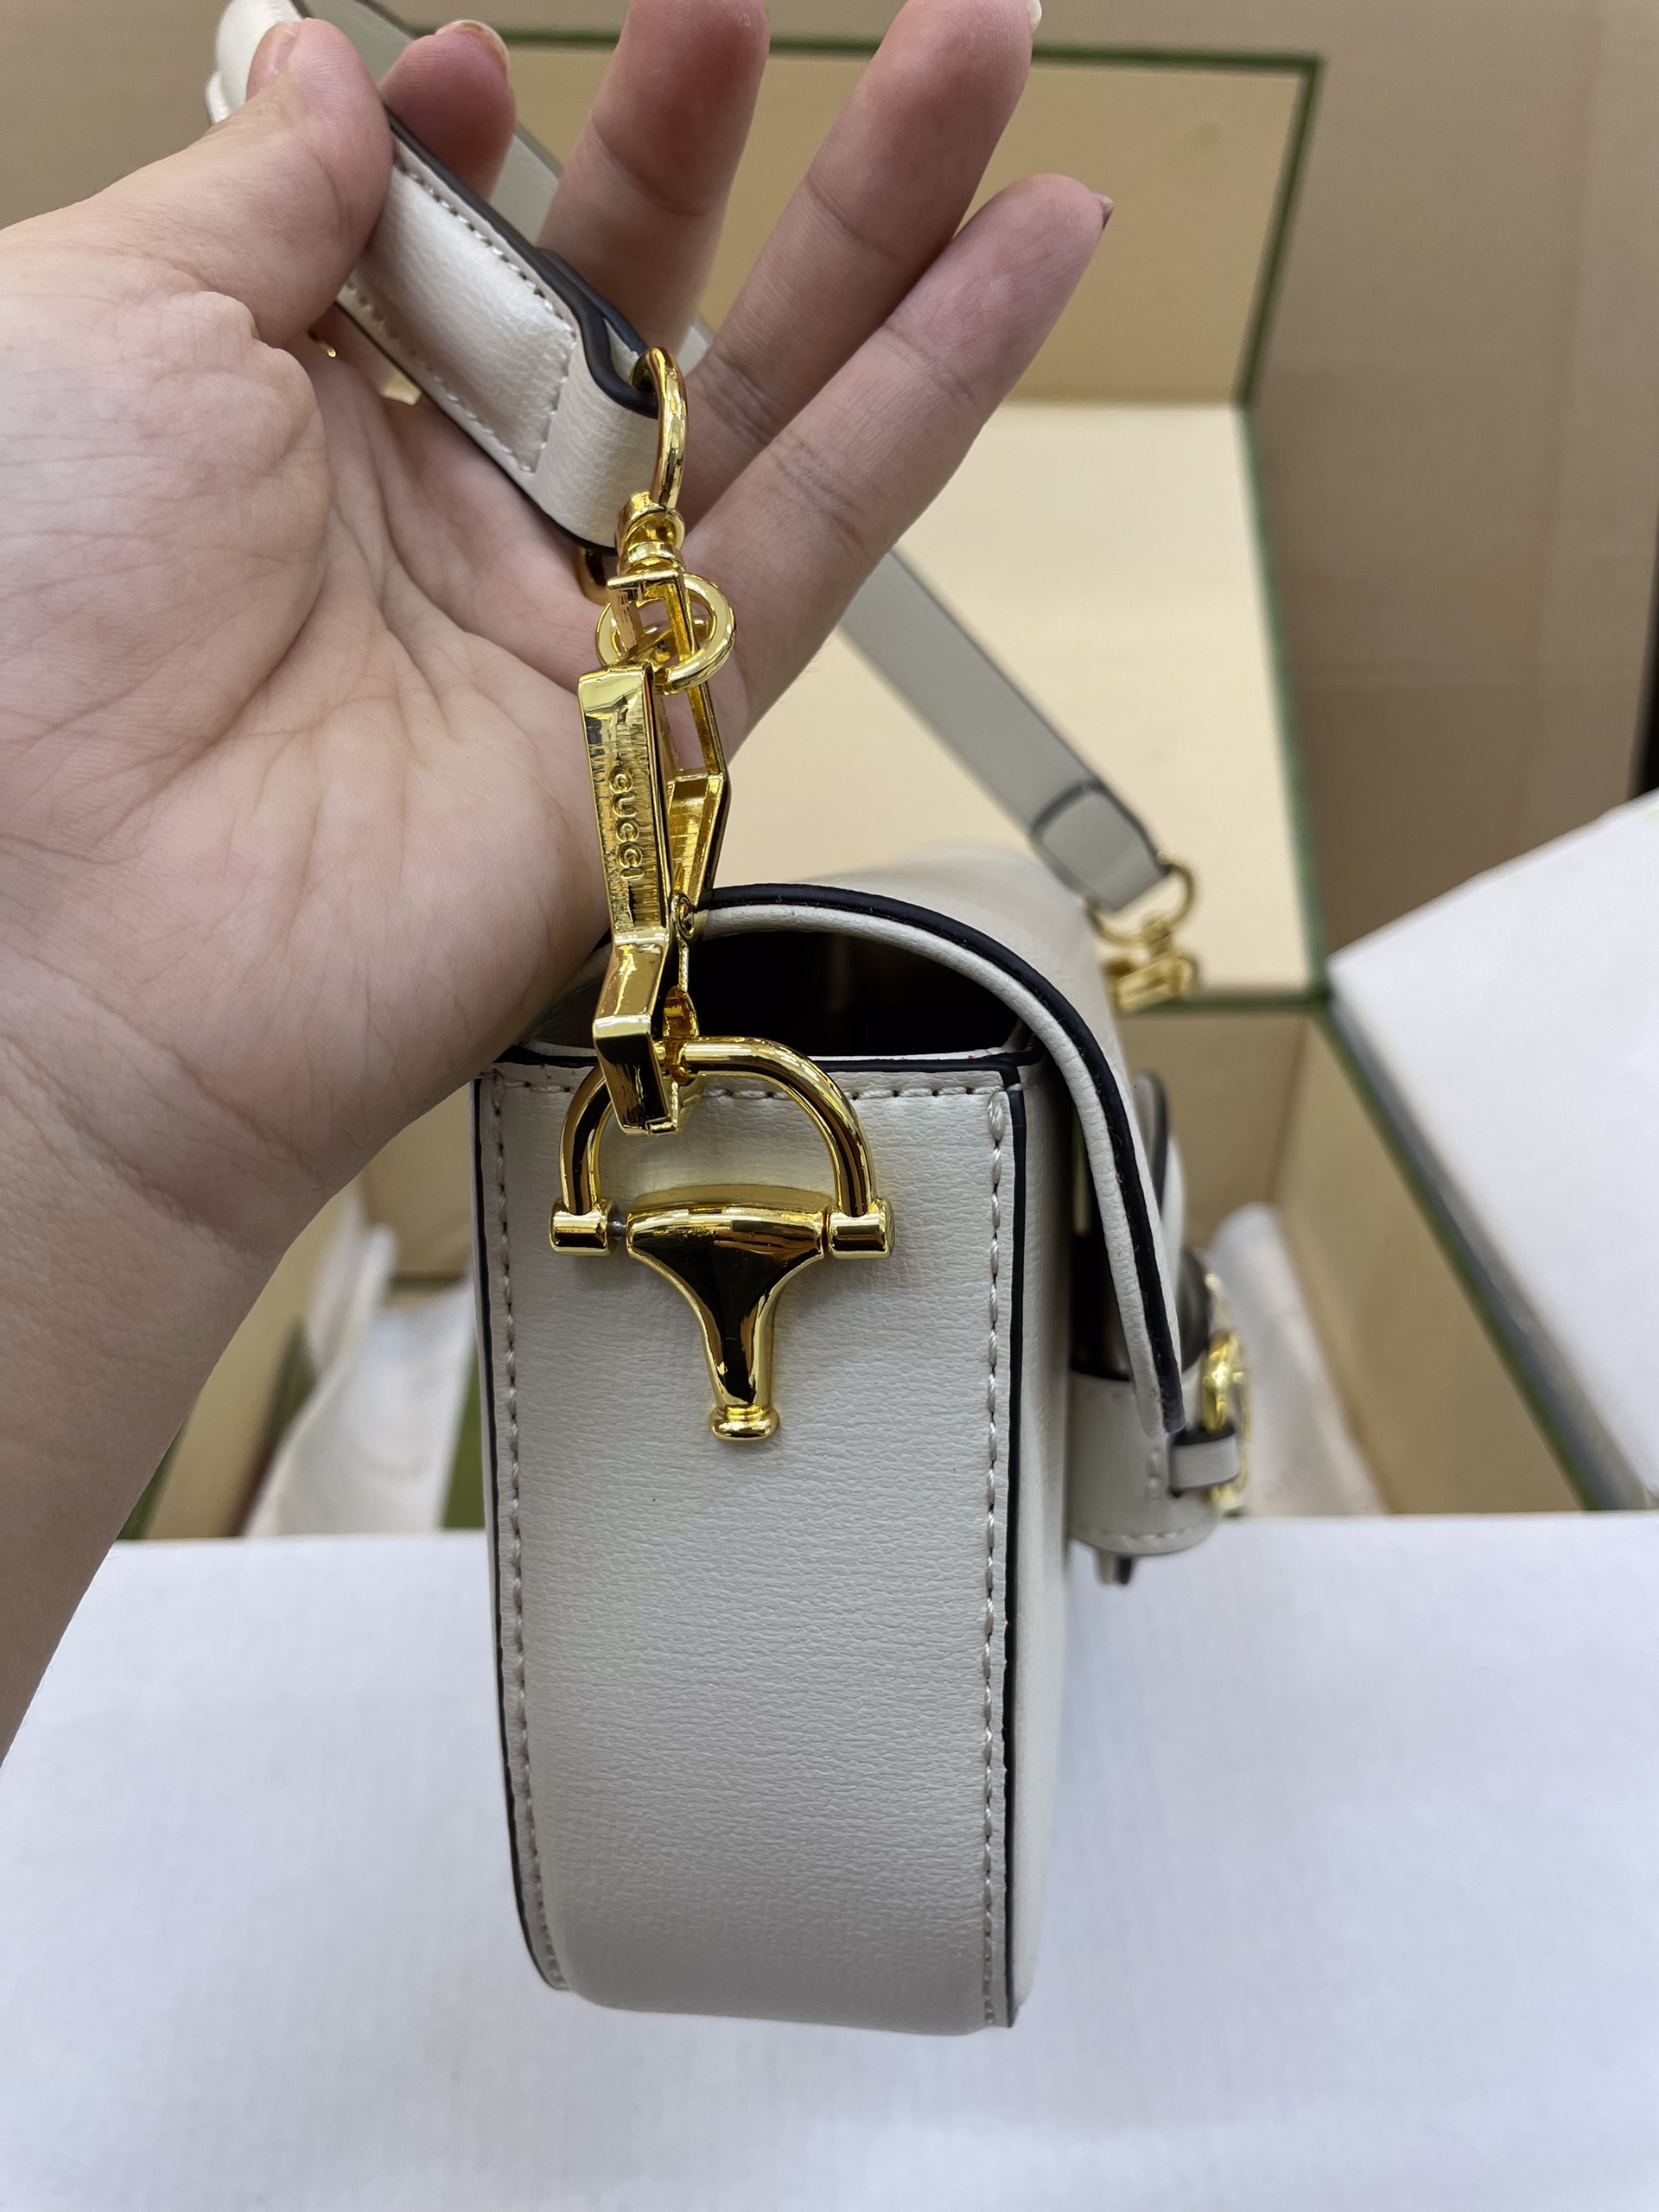 Túi Xách Gucci Horsebit 1955 Super Màu Trắng Size 25cm Full Box